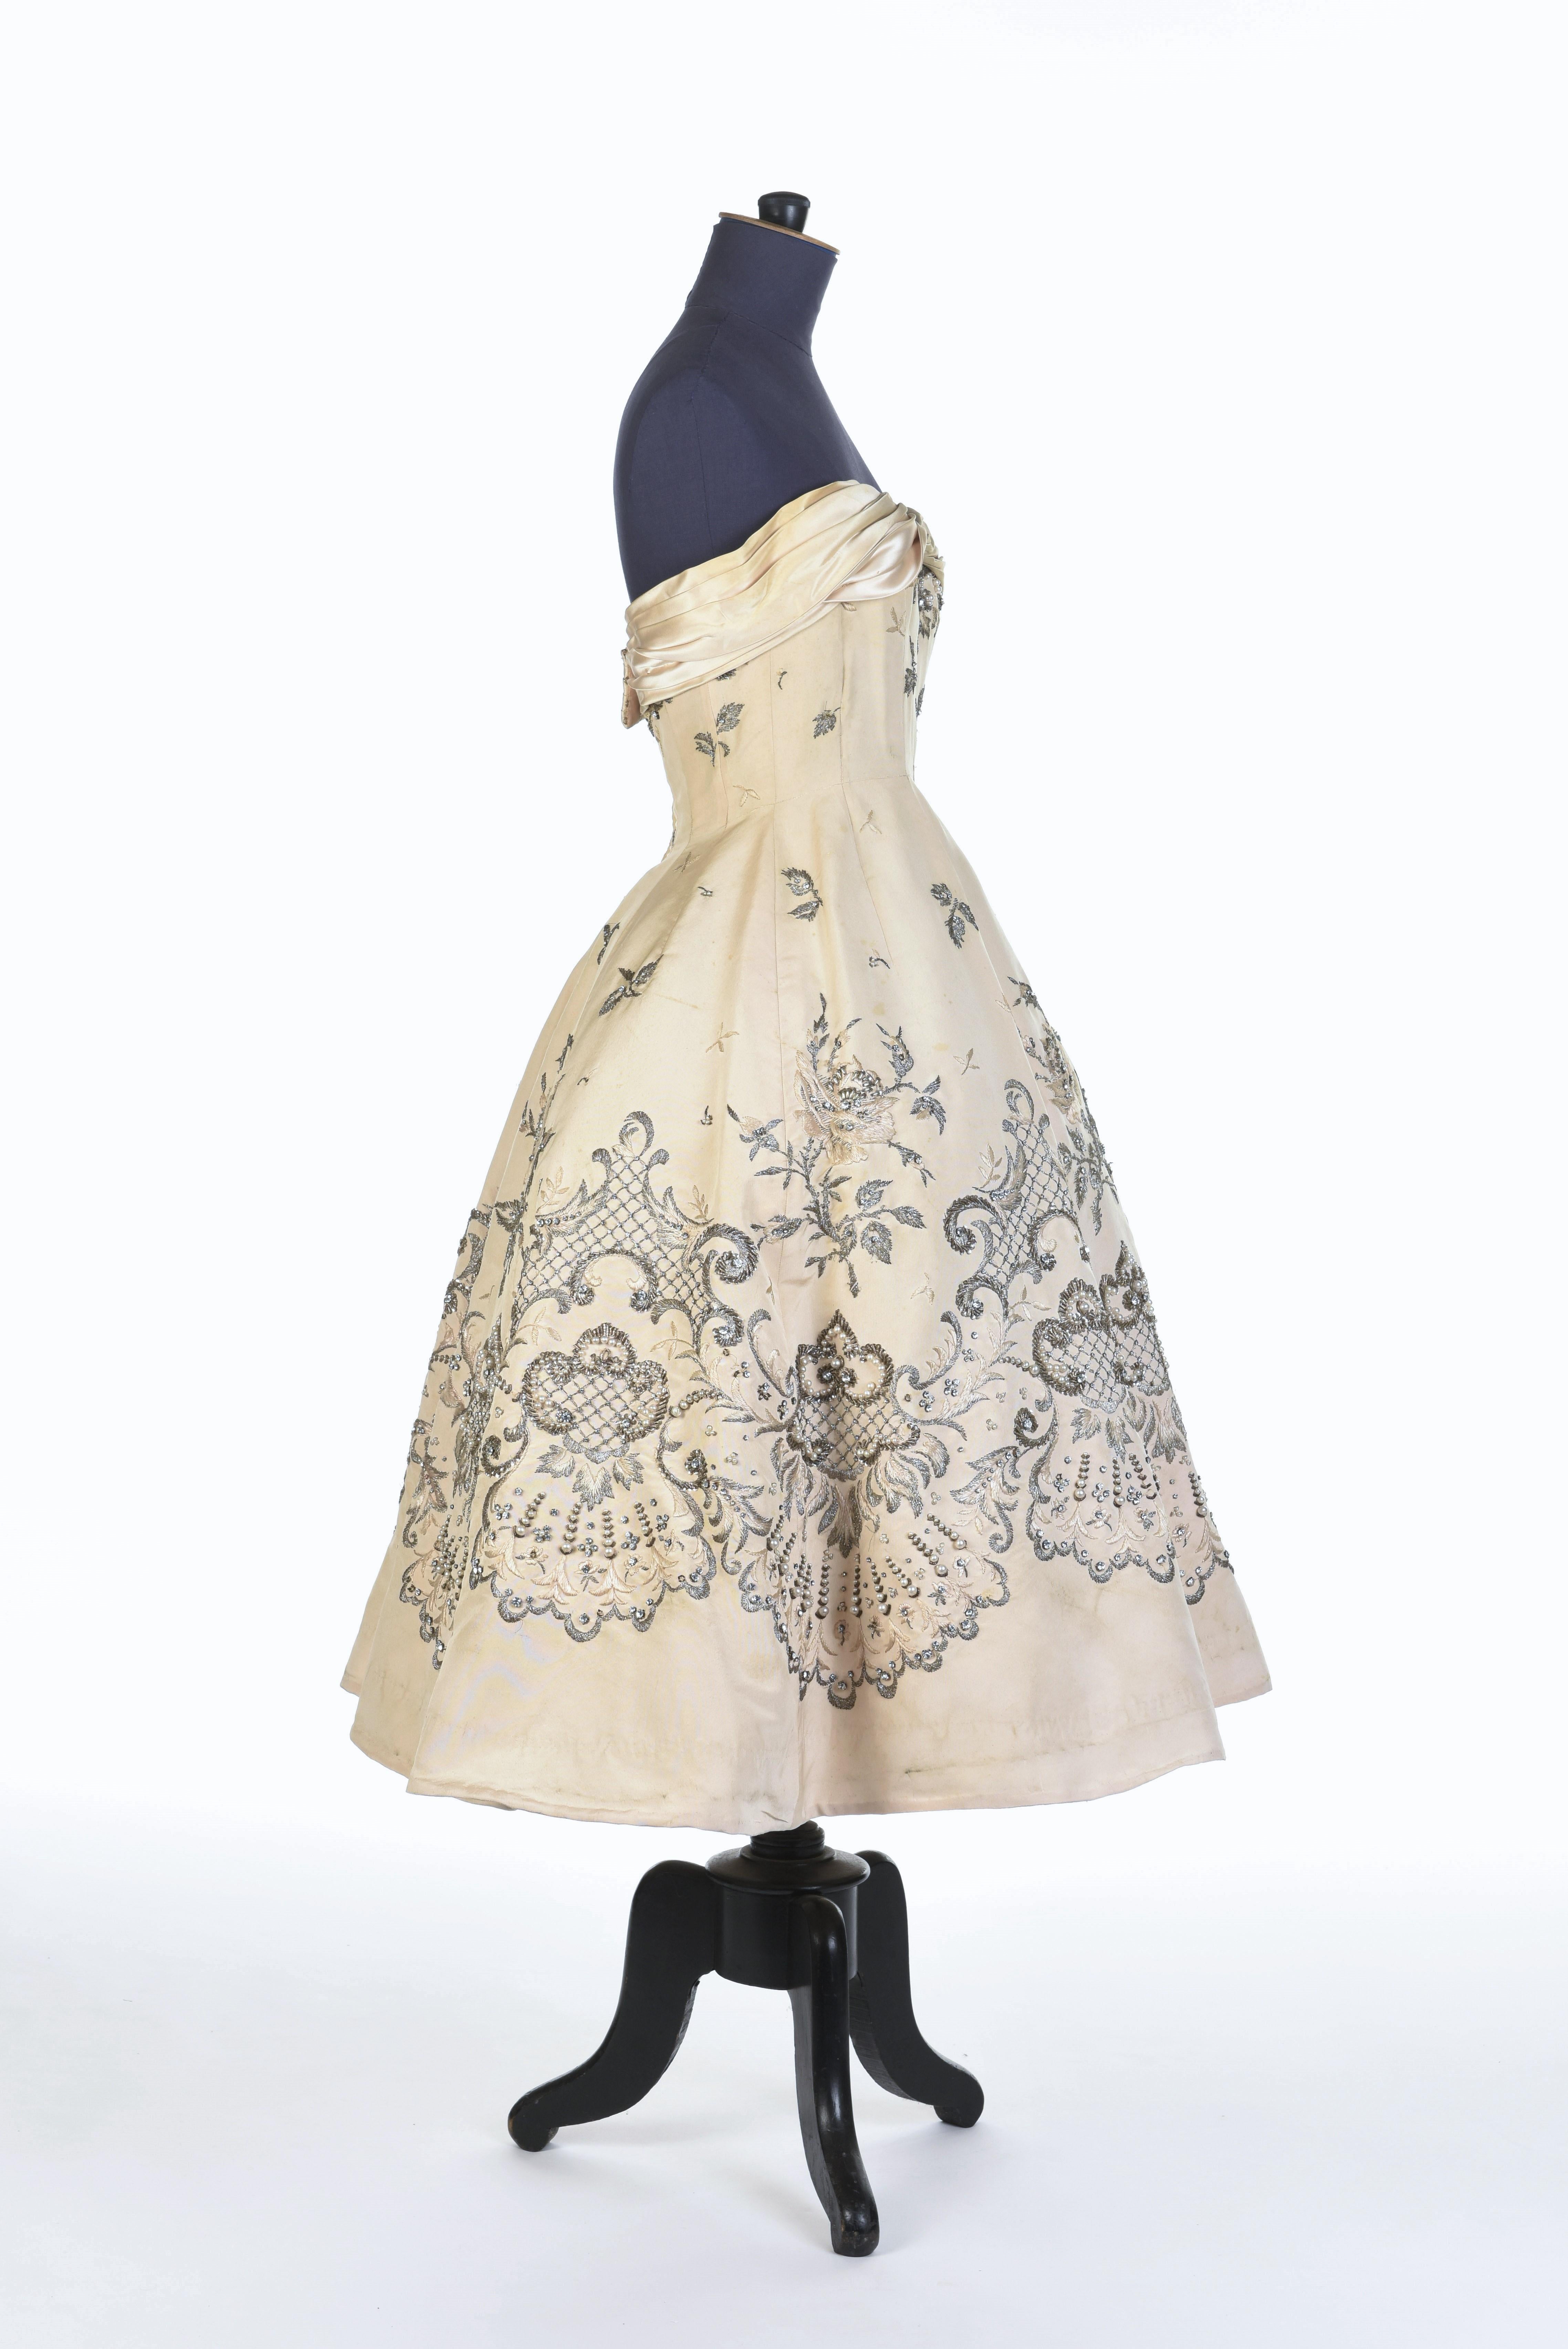 Robe de bal Pierre Balmain Couture en soie crème numérotée 87681, datant d'environ 1955/1957 7